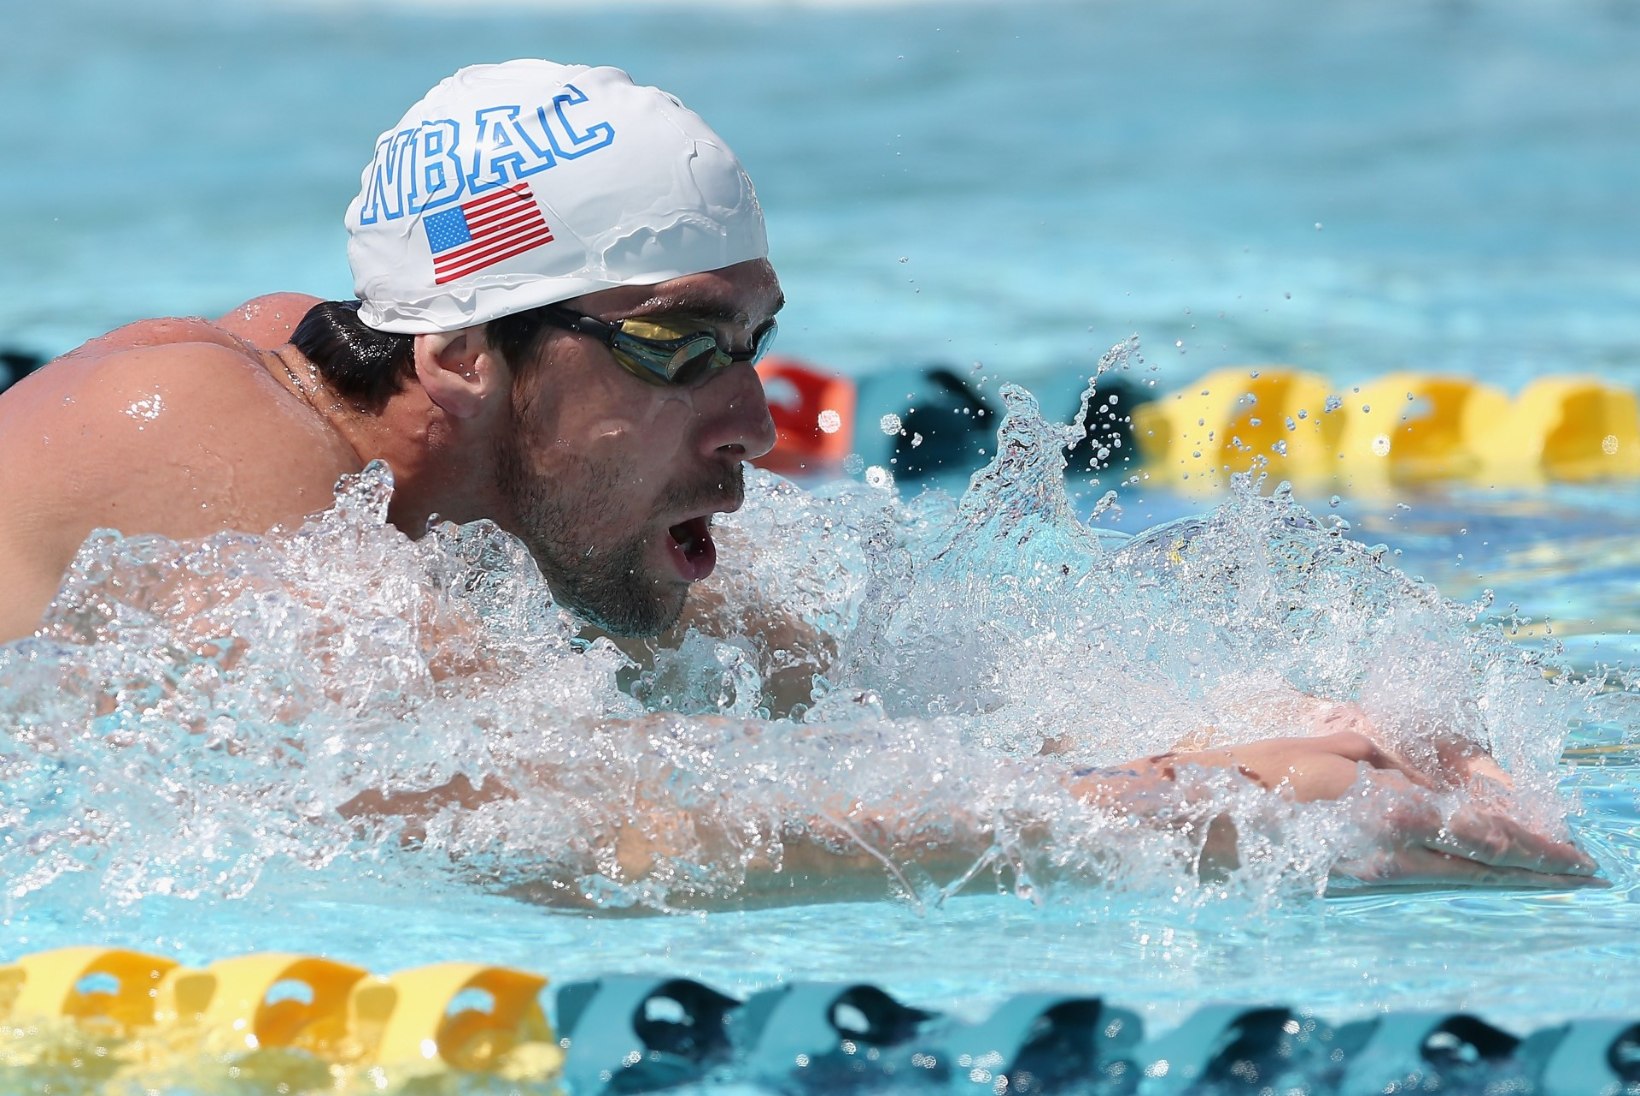 GALERII: Phelps tegi eduka tagasituleku, alistades ka Martin Liivamäe